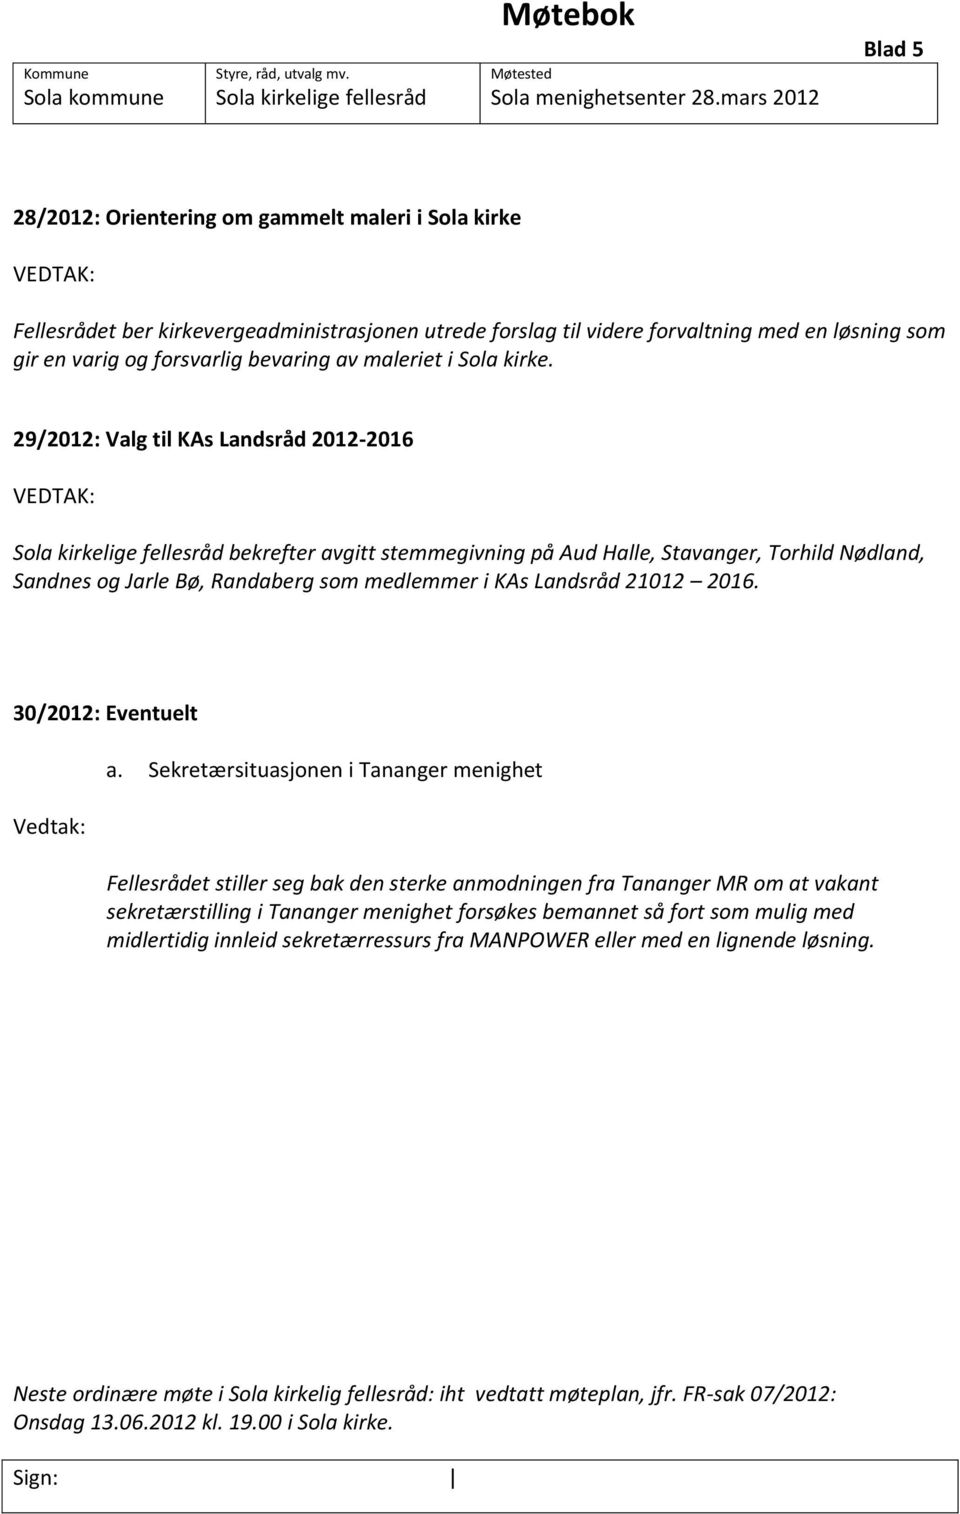 29/2012: Valg til KAs Landsråd 2012-2016 bekrefter avgitt stemmegivning på Aud Halle, Stavanger, Torhild Nødland, Sandnes og Jarle Bø, Randaberg som medlemmer i KAs Landsråd 21012 2016.